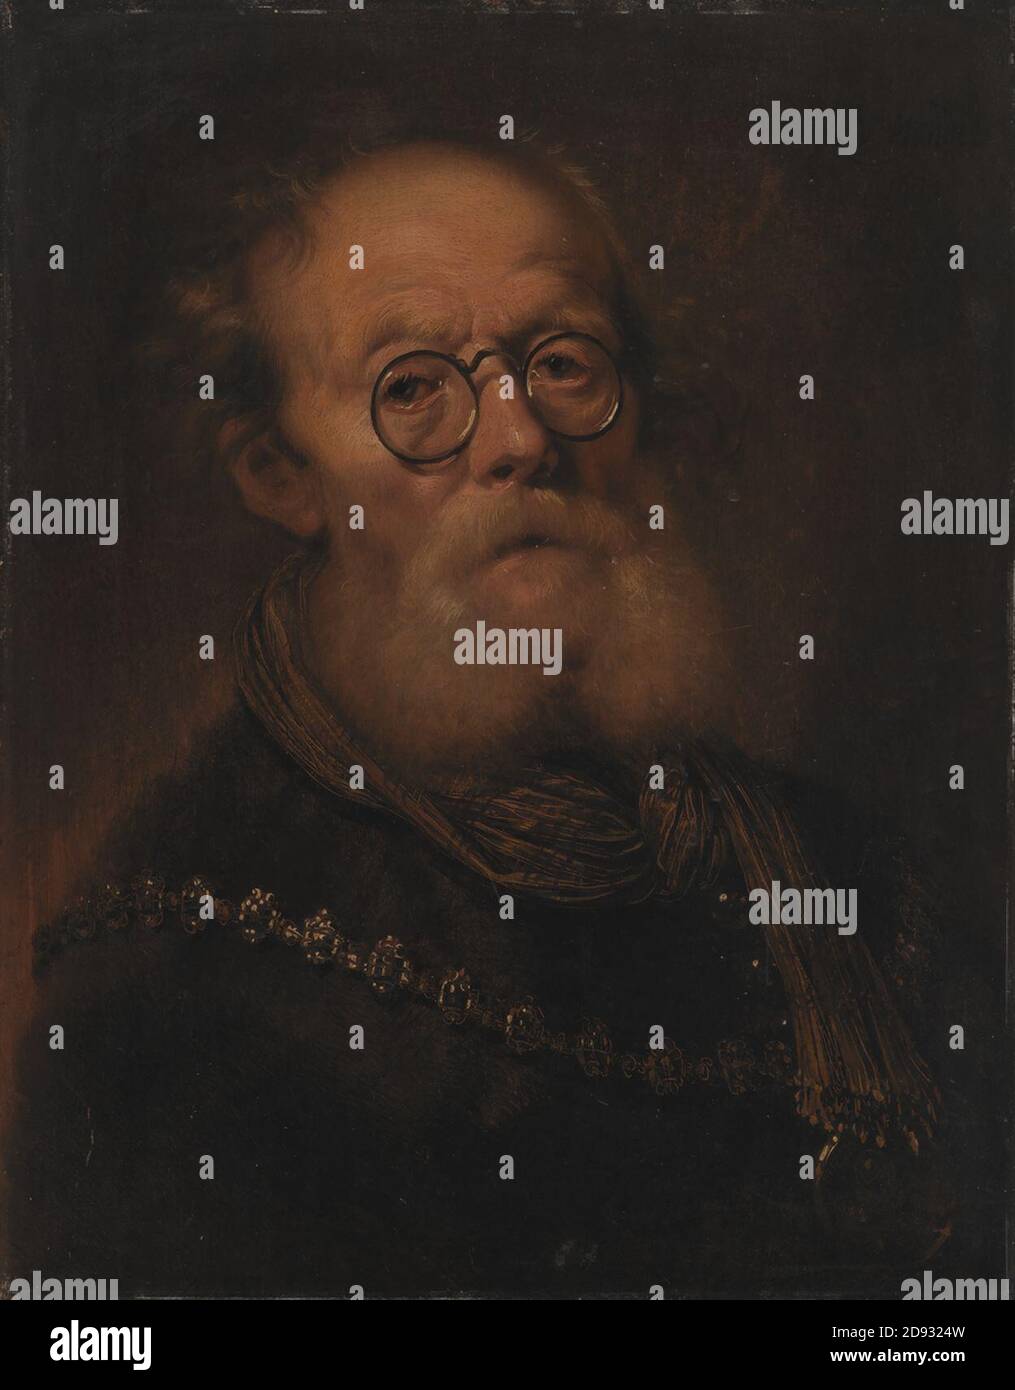 Karel van III Mander - En gammel mand. Allegorisk fremstilling af synet  Stock Photo - Alamy